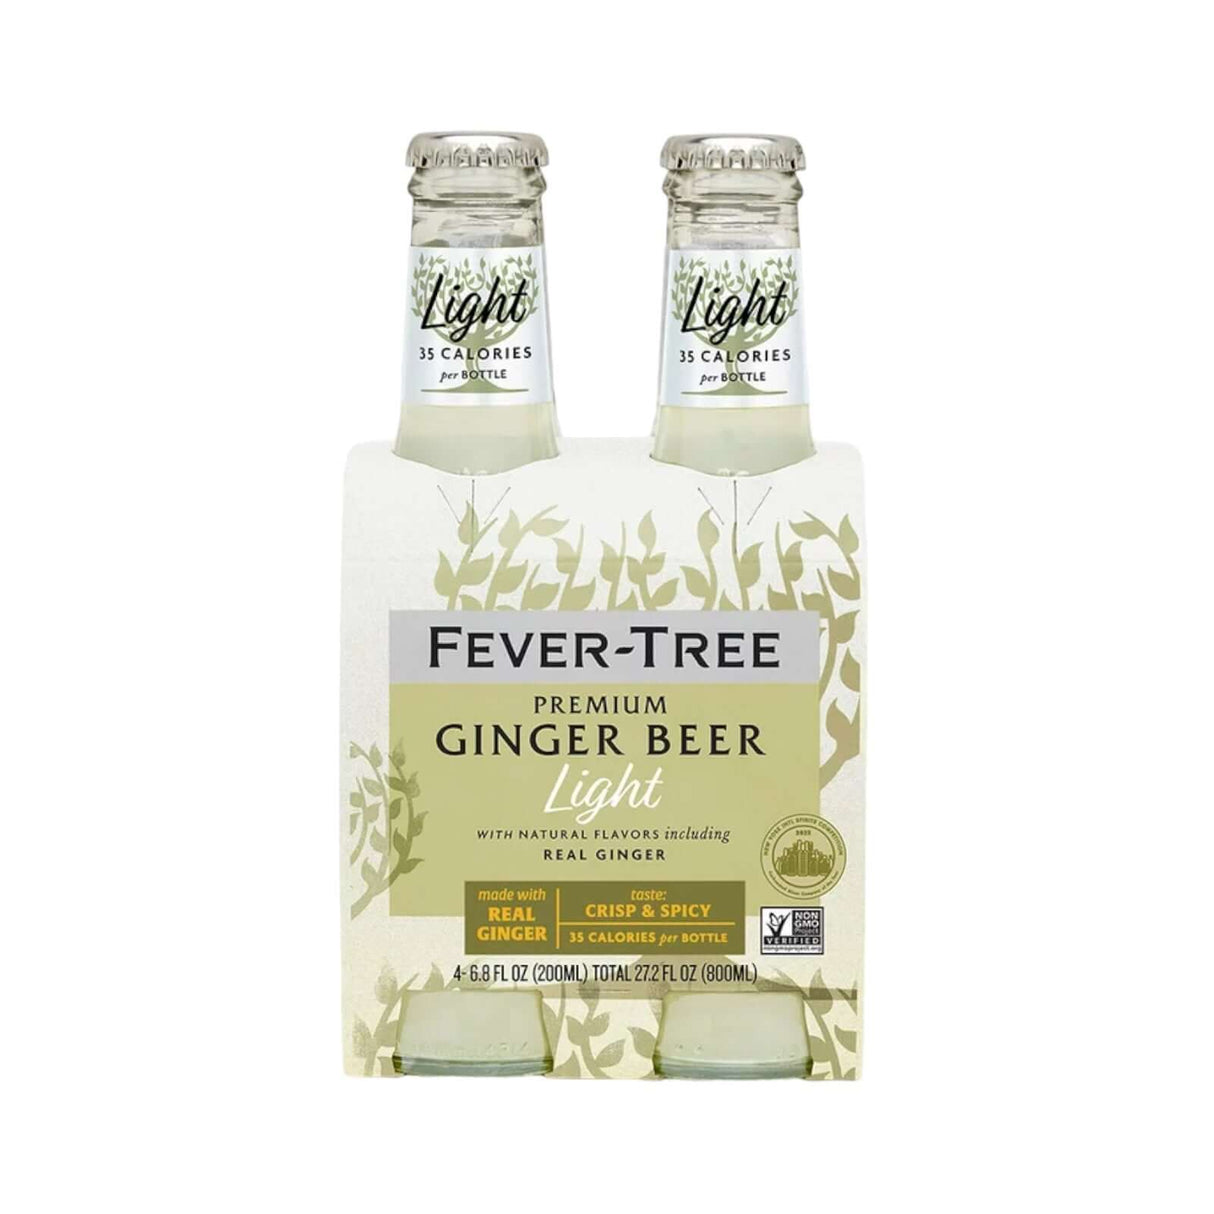 Fever-Tree Premium Ginger Beer Light